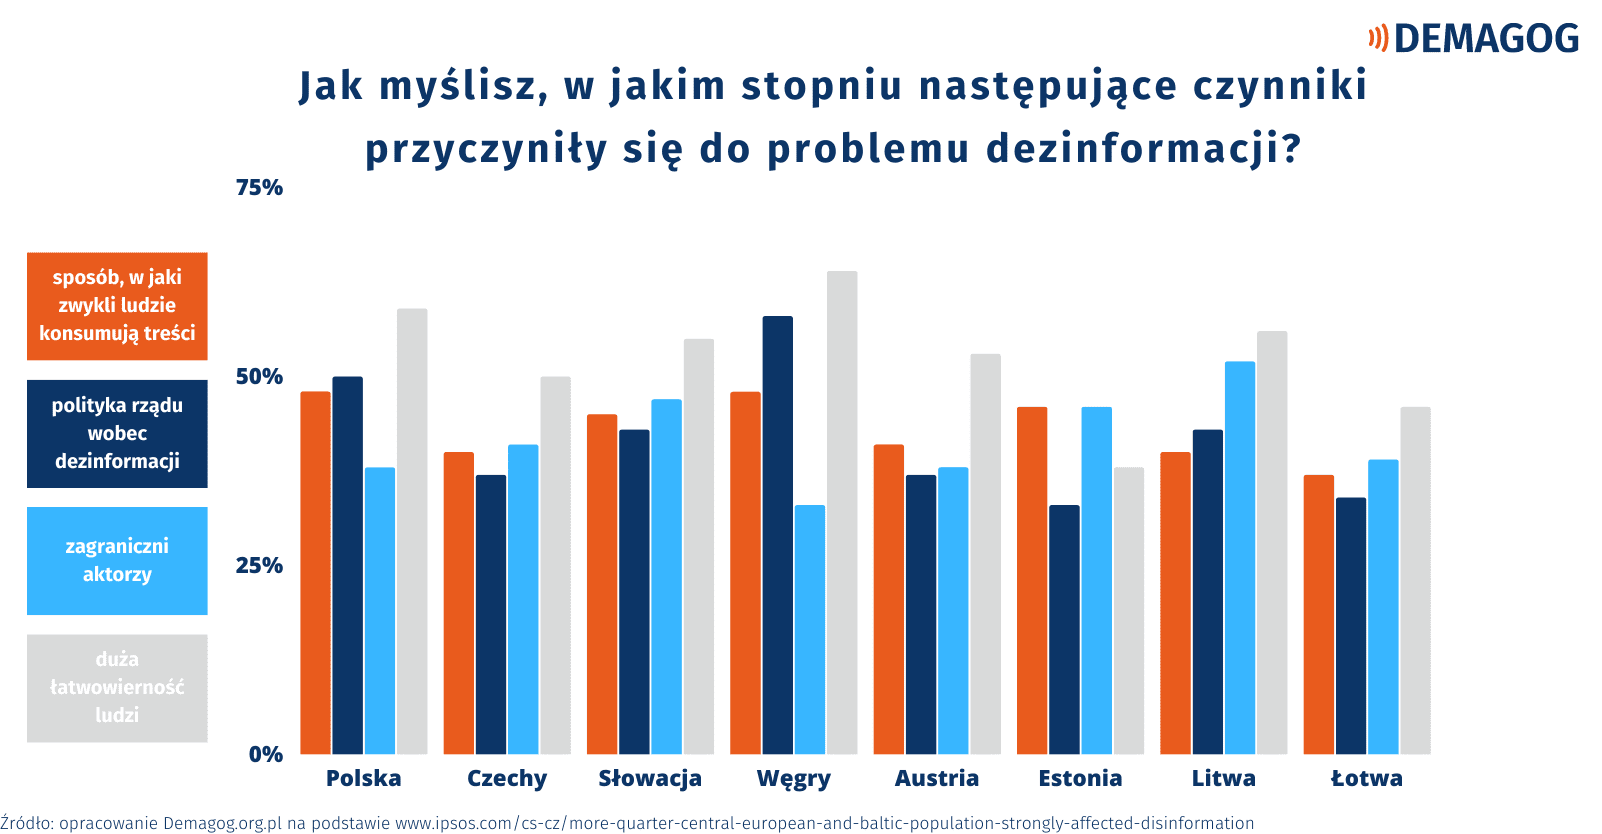 Wykres przedstawiający odpowiedzi mieszkańców poszczególnych badanych krajów na pytanie o czynniki przyczyniające się do problemu dezinformacji.